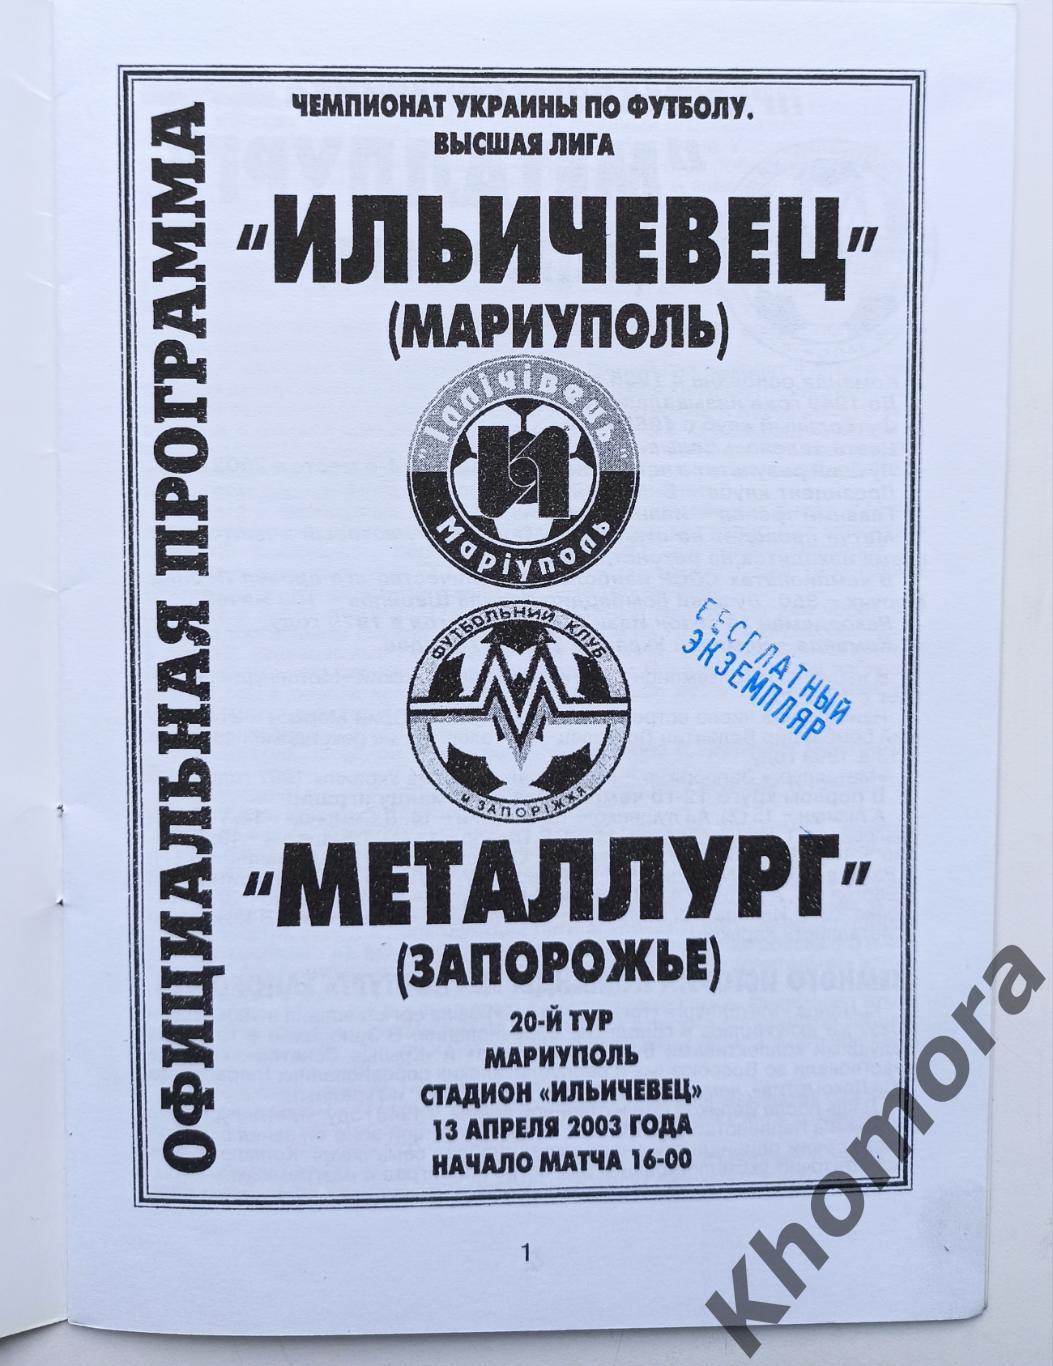 Ильичевец (Мариуполь) - Металлург (Запорожье) 13.04.2003 - официальная программа 1